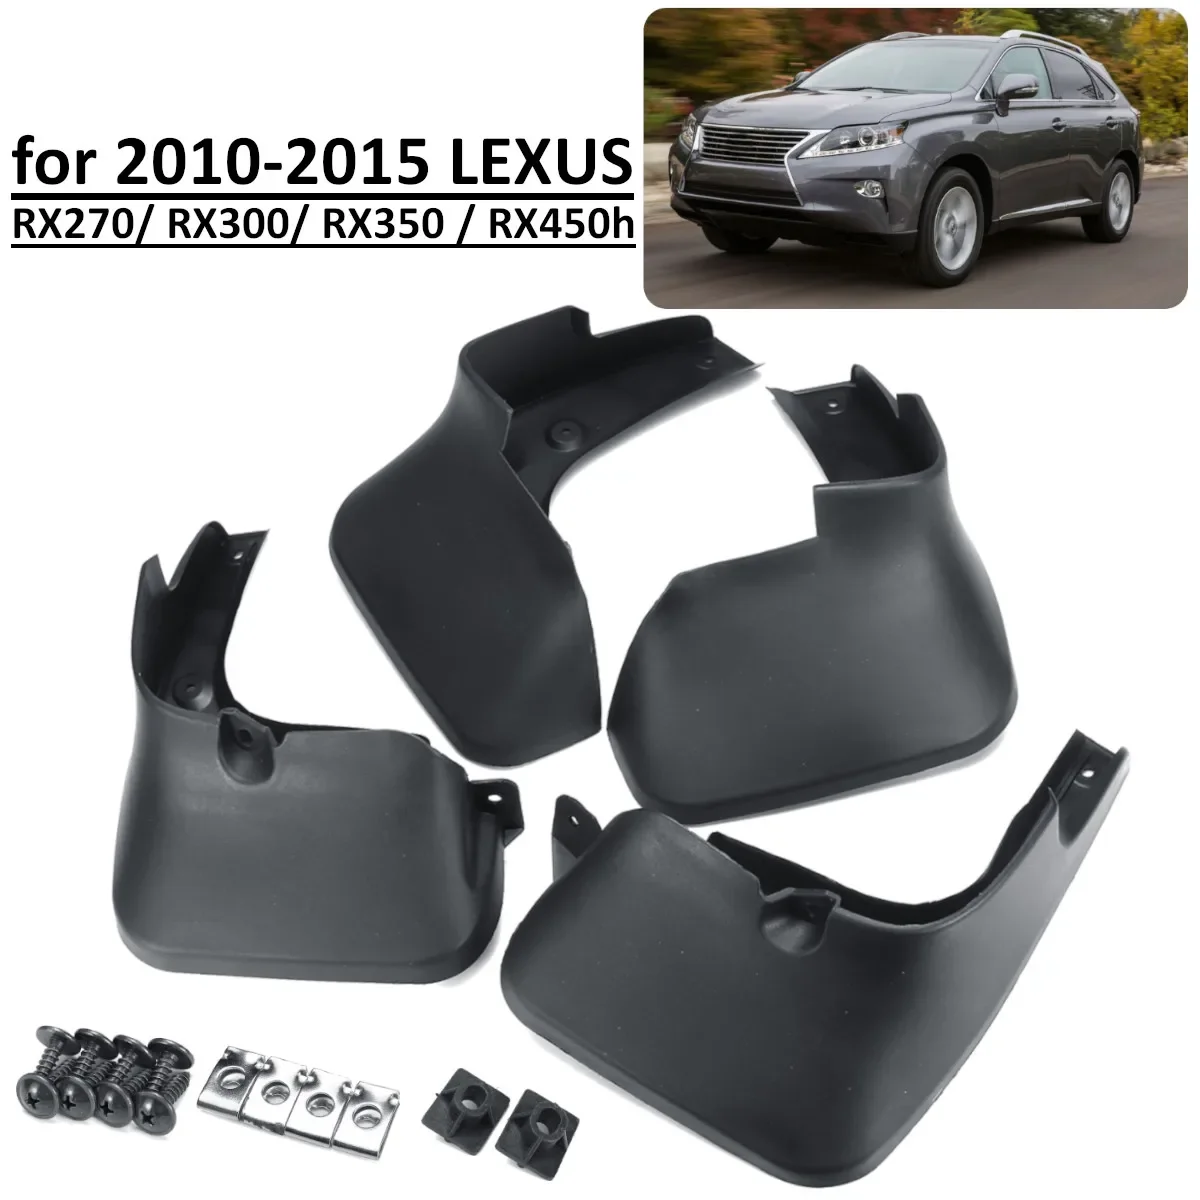 

4pcs Mud Flaps For LEXUS RX RX300 RX350 RX270 RX450H 2010-2015 Mudflaps Front Rear Mudguards Splash Guards Car Accessories